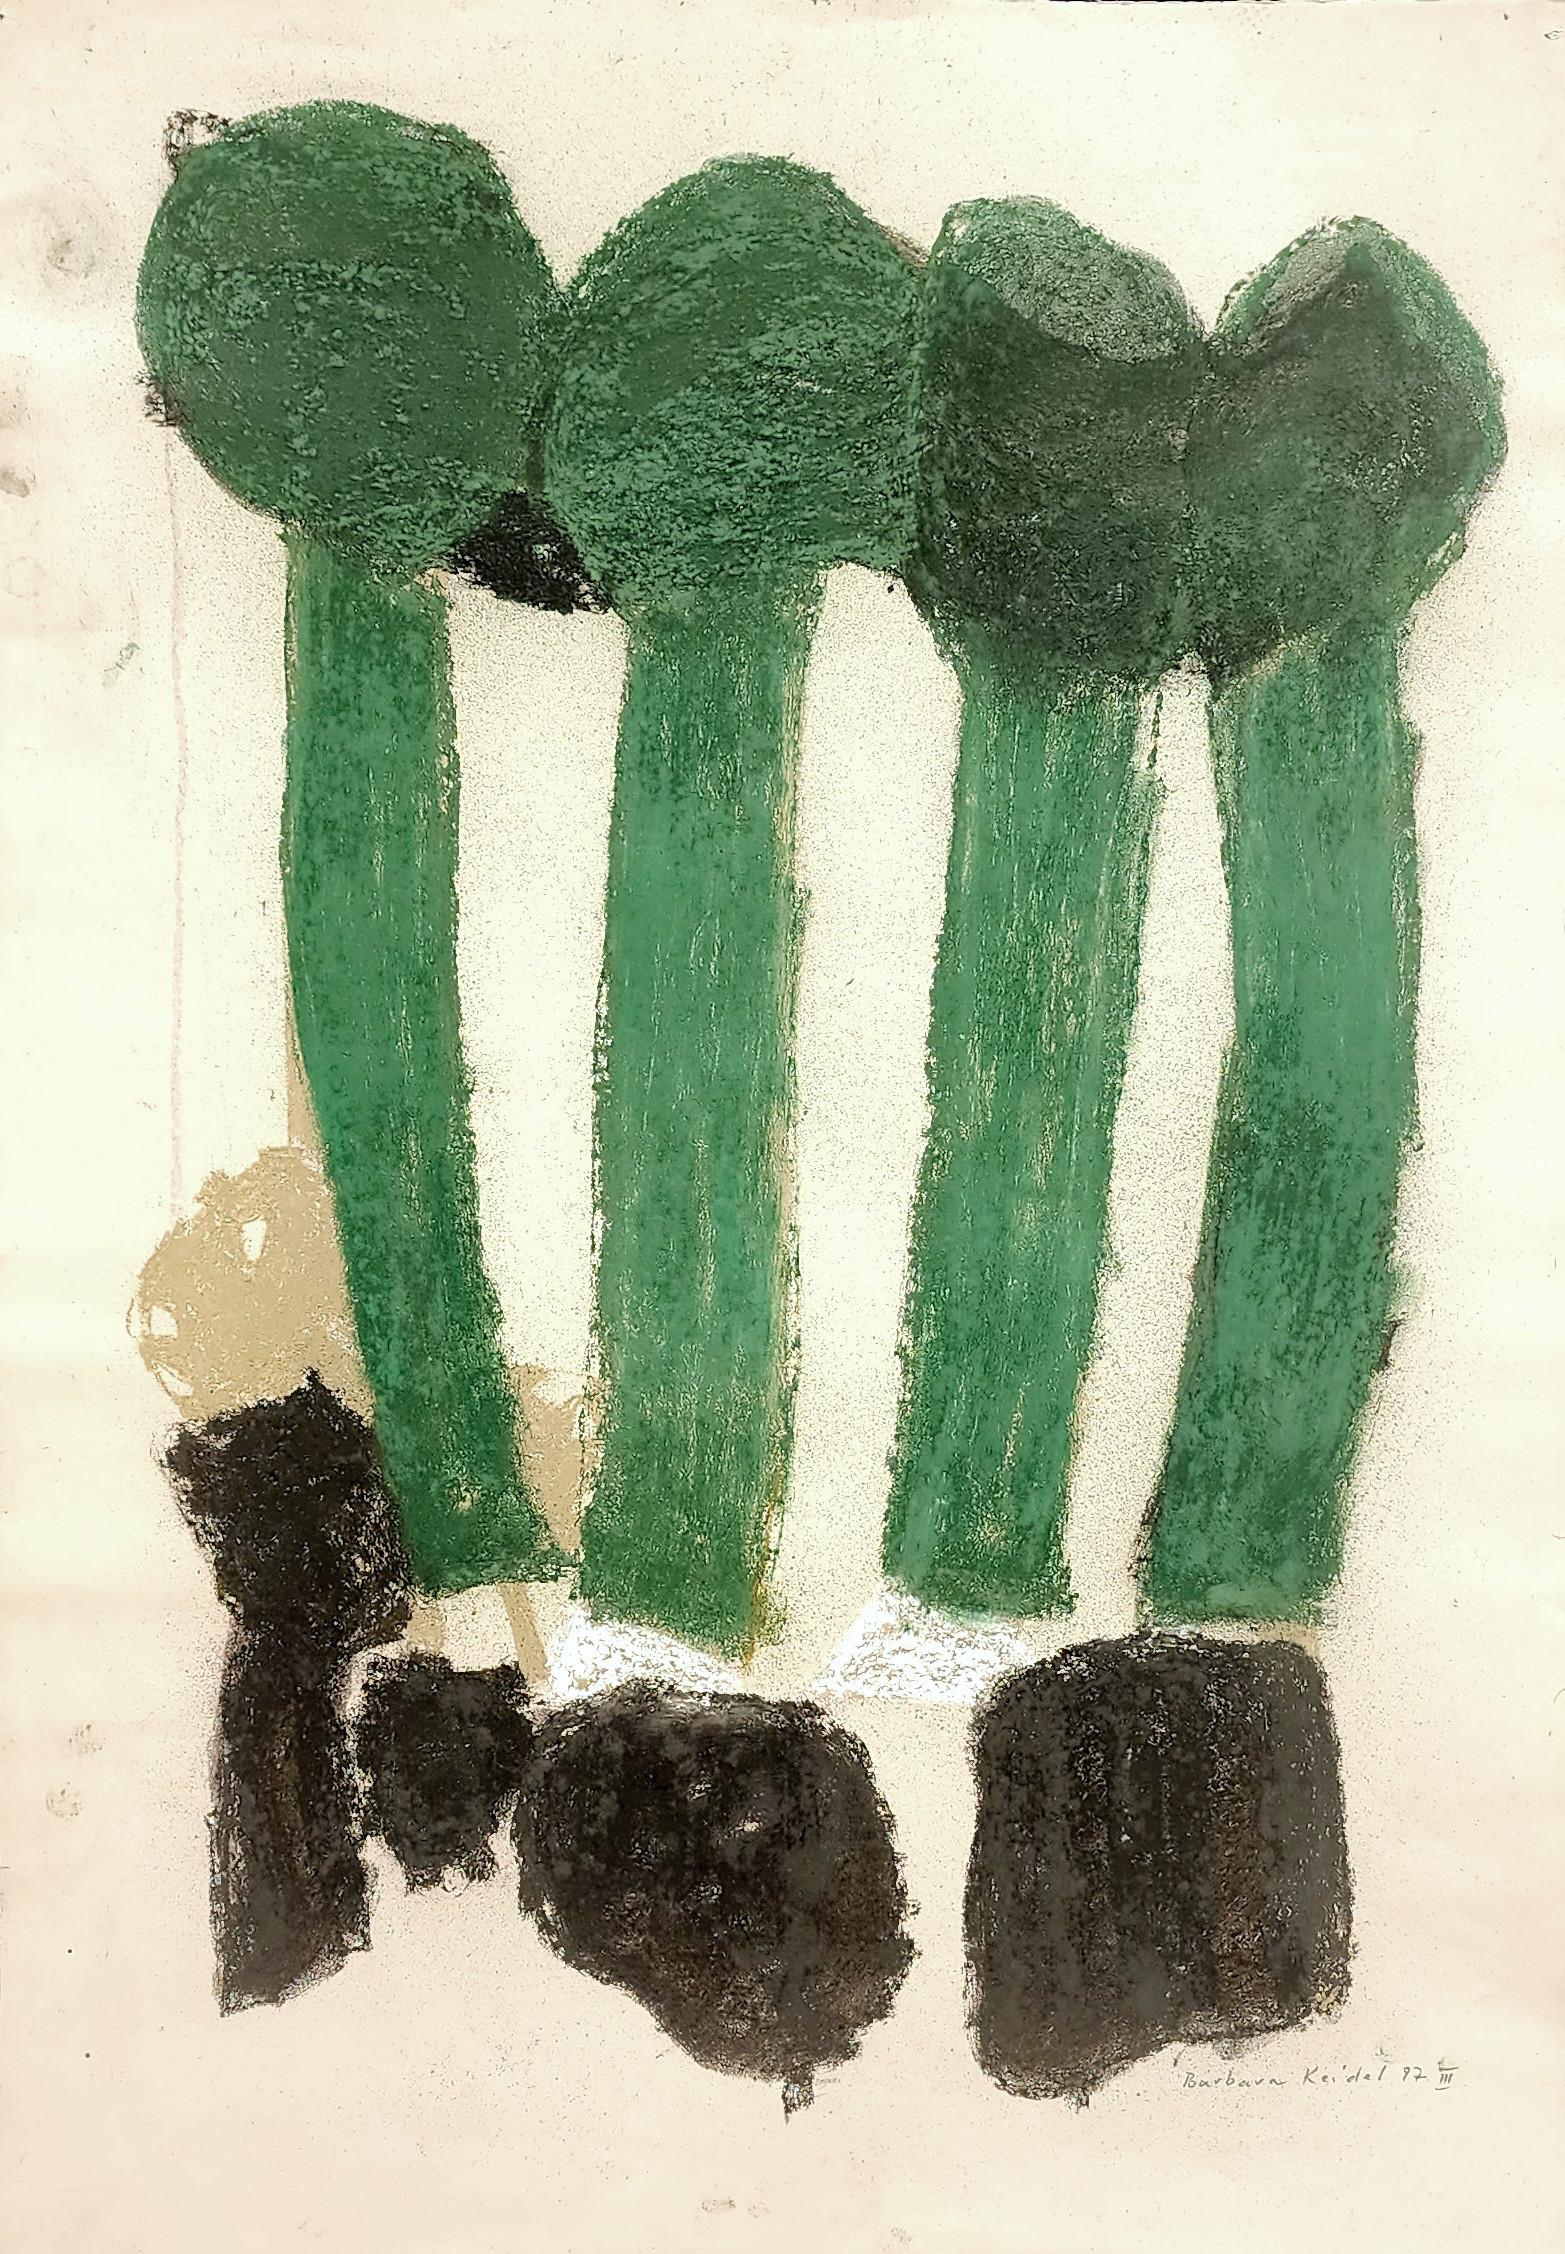 Barbara Keidel Abstract Drawing - Abstract Composition (Pijuan, Green, Nature, Botany)